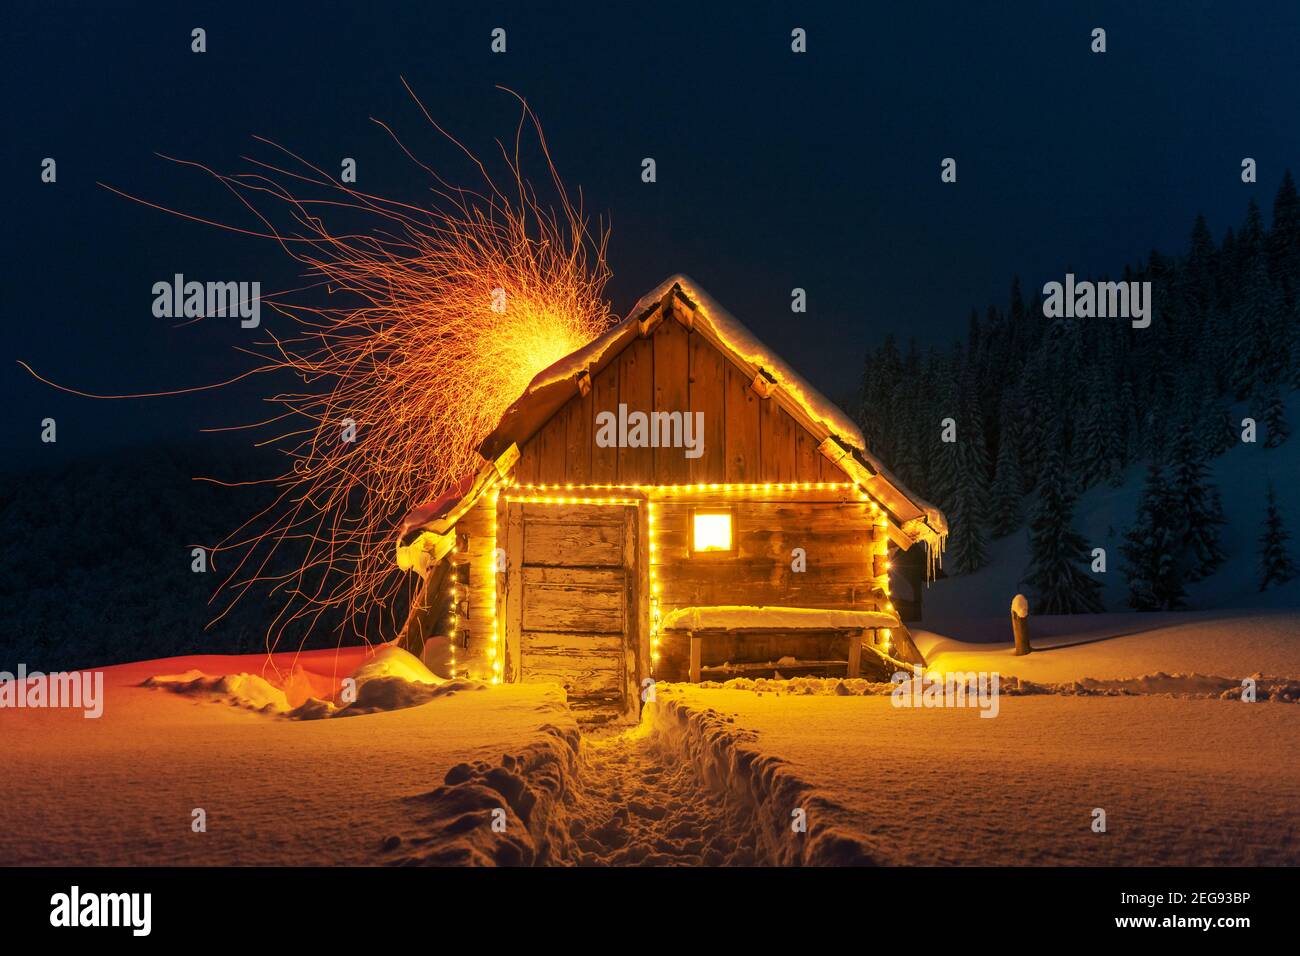 Paysage d'hiver fantastique avec cabine en bois lumineux dans une forêt enneigée. Des étincelles de feu sortent de la cheminée. Concept de vacances de Noël Banque D'Images